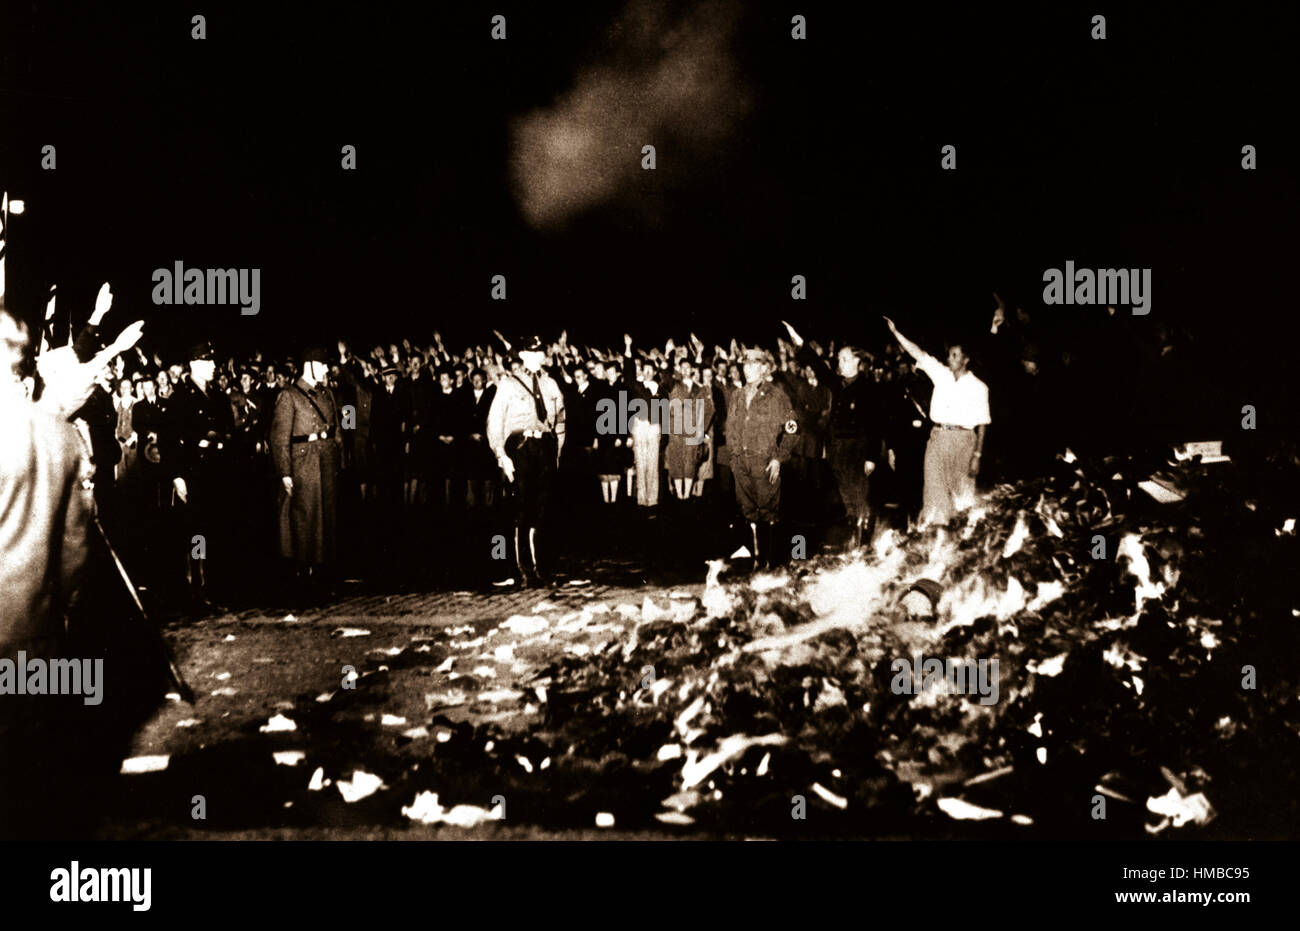 Des milliers de livres dans un énorme feu de couver pendant que les Allemands donner le salut nazi pendant la vague de livres brûlés qui s'est répandu dans toute l'Allemagne. 1933. Banque D'Images